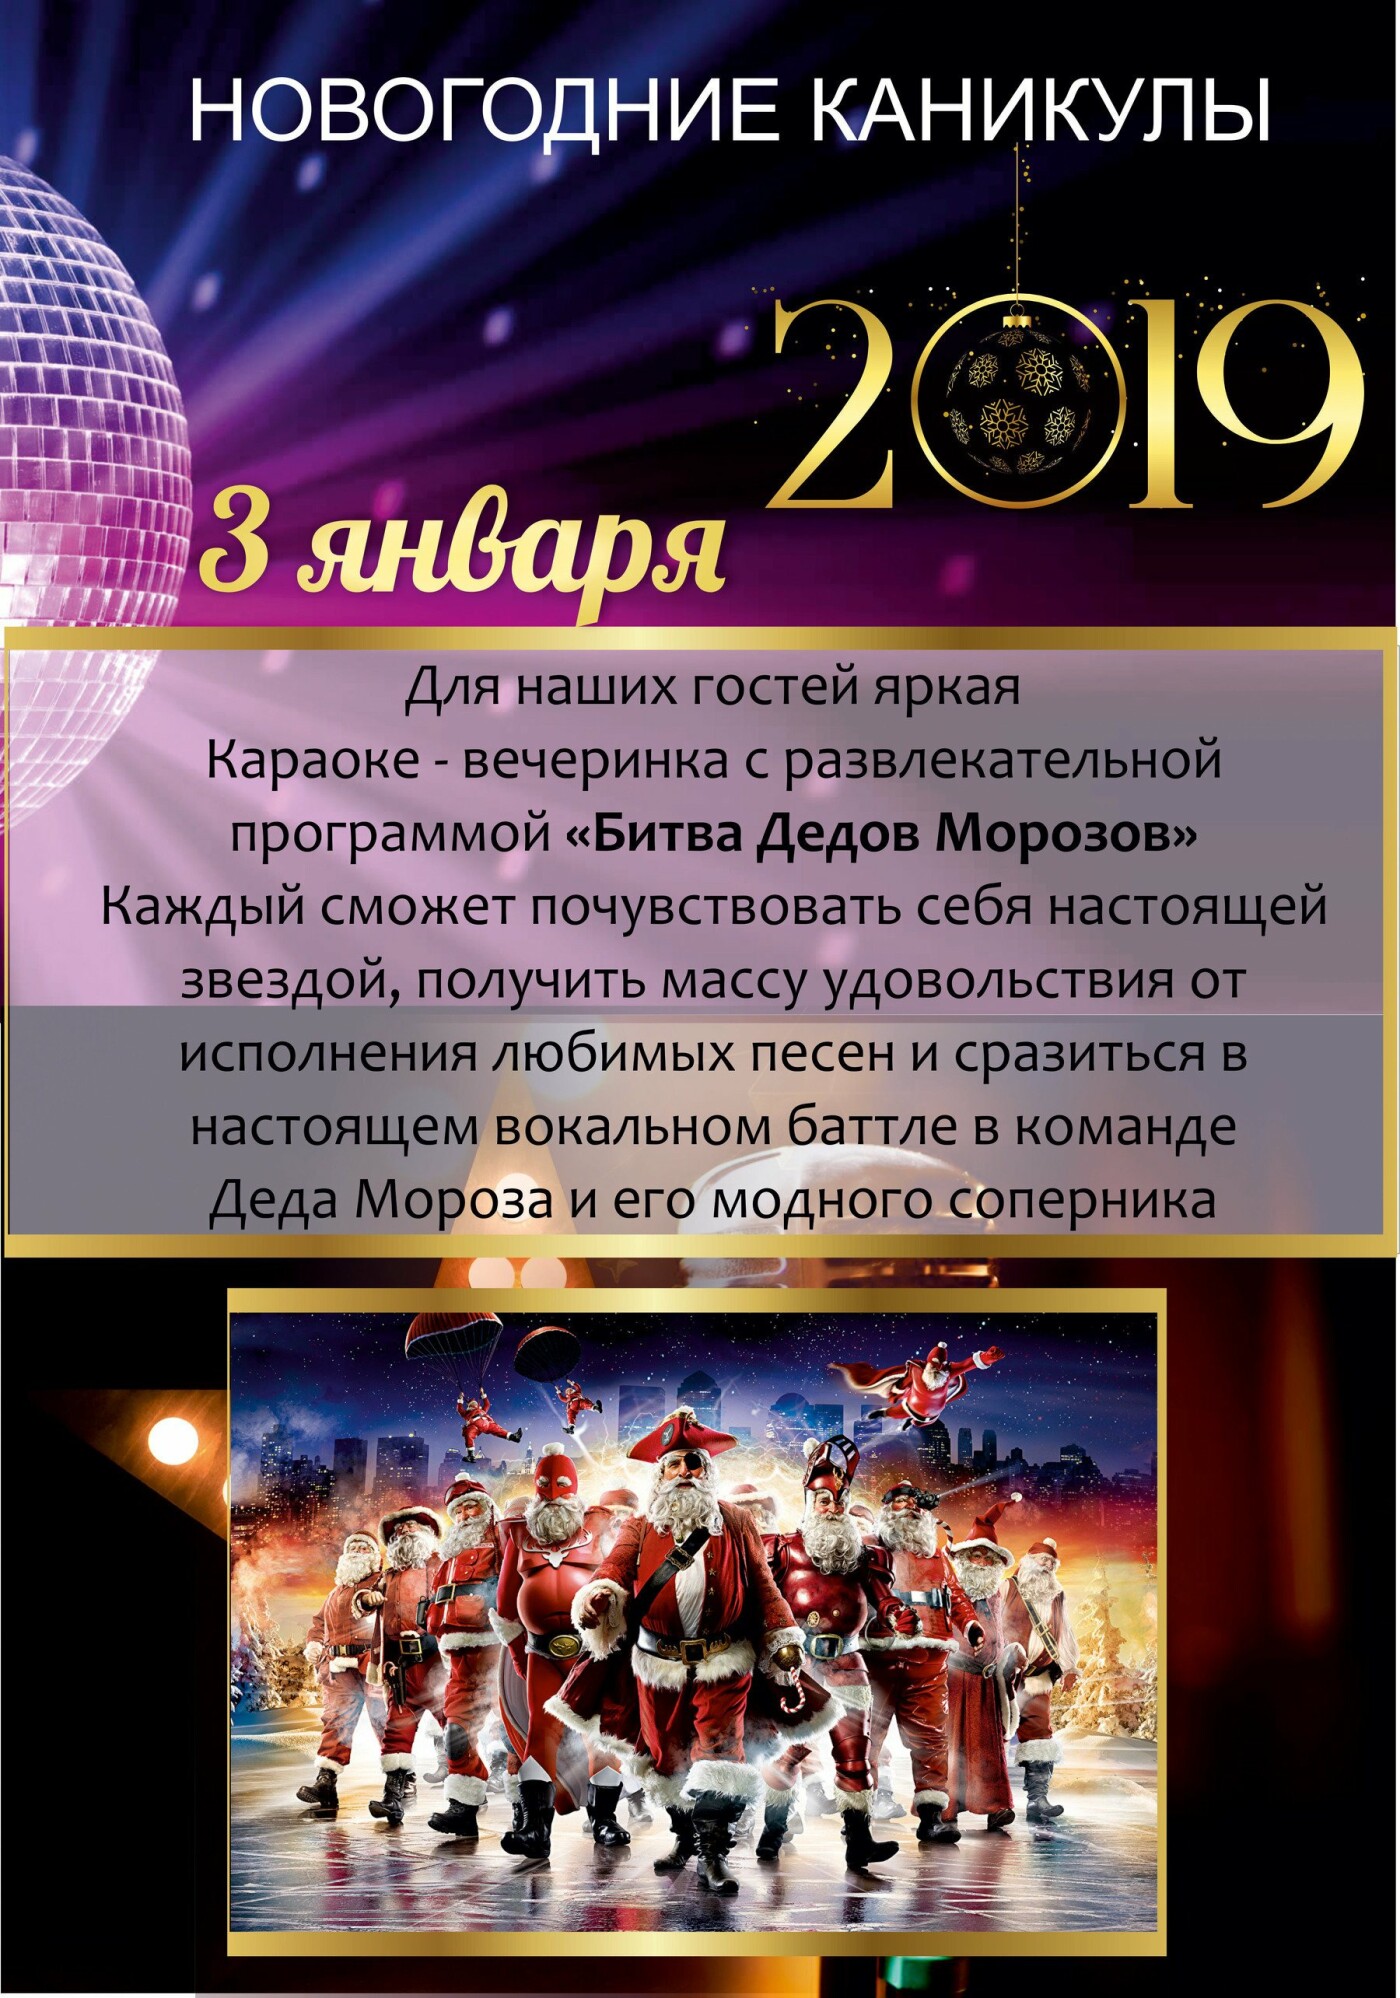 Встречайте Новый год-2019 всей семьей в санатории «Айвазовское»!, фото-5